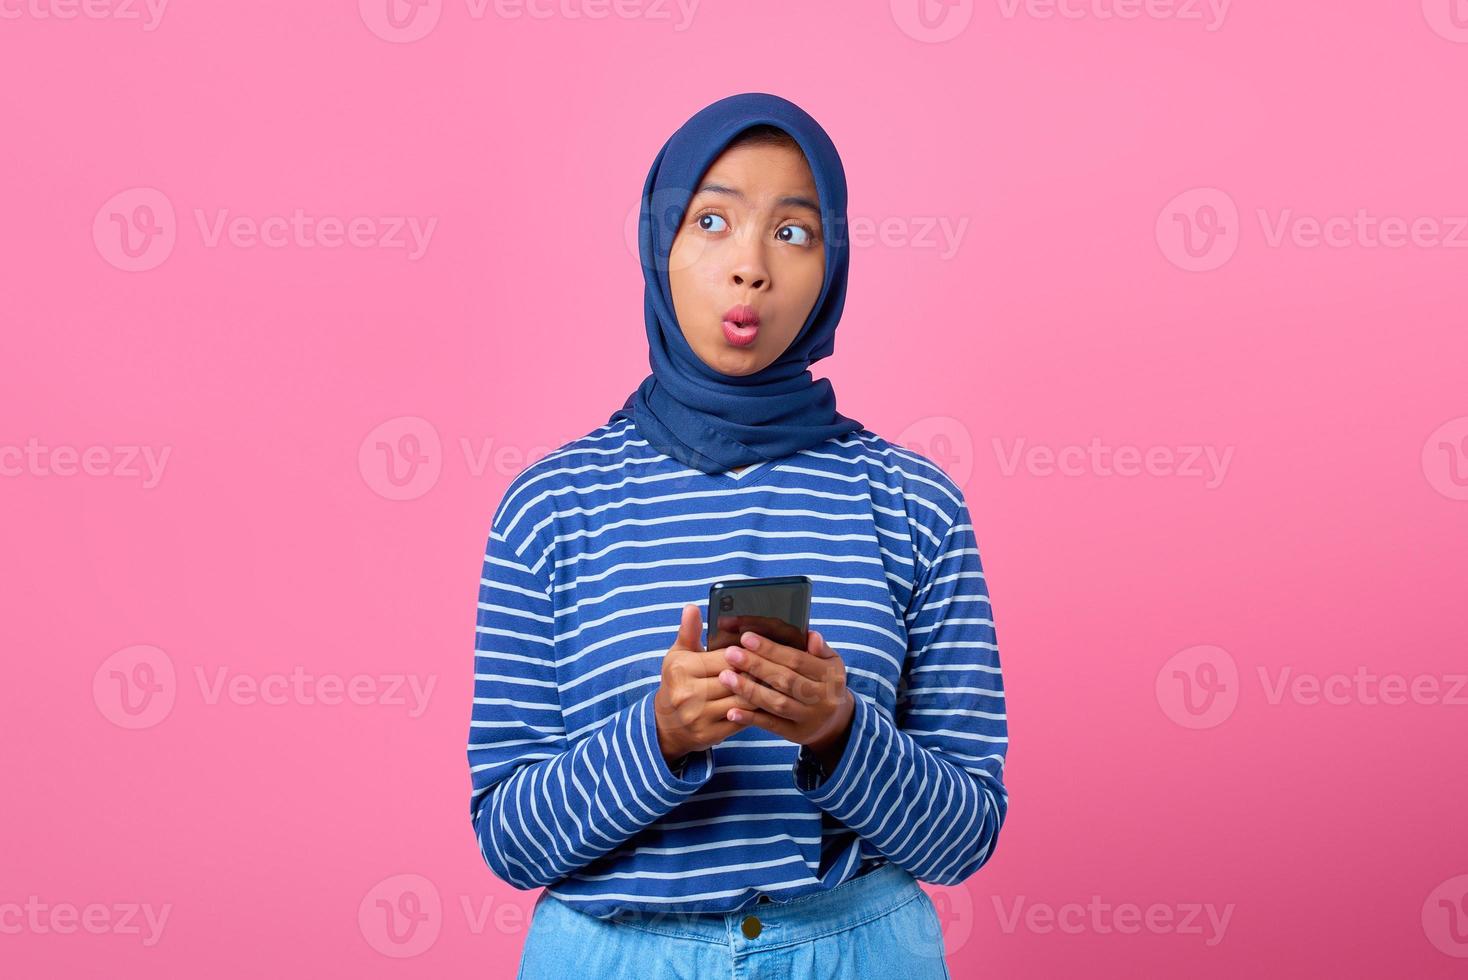 porträtt av chockad ung asiatisk kvinna som håller mobiltelefon och tittar åt sidan foto